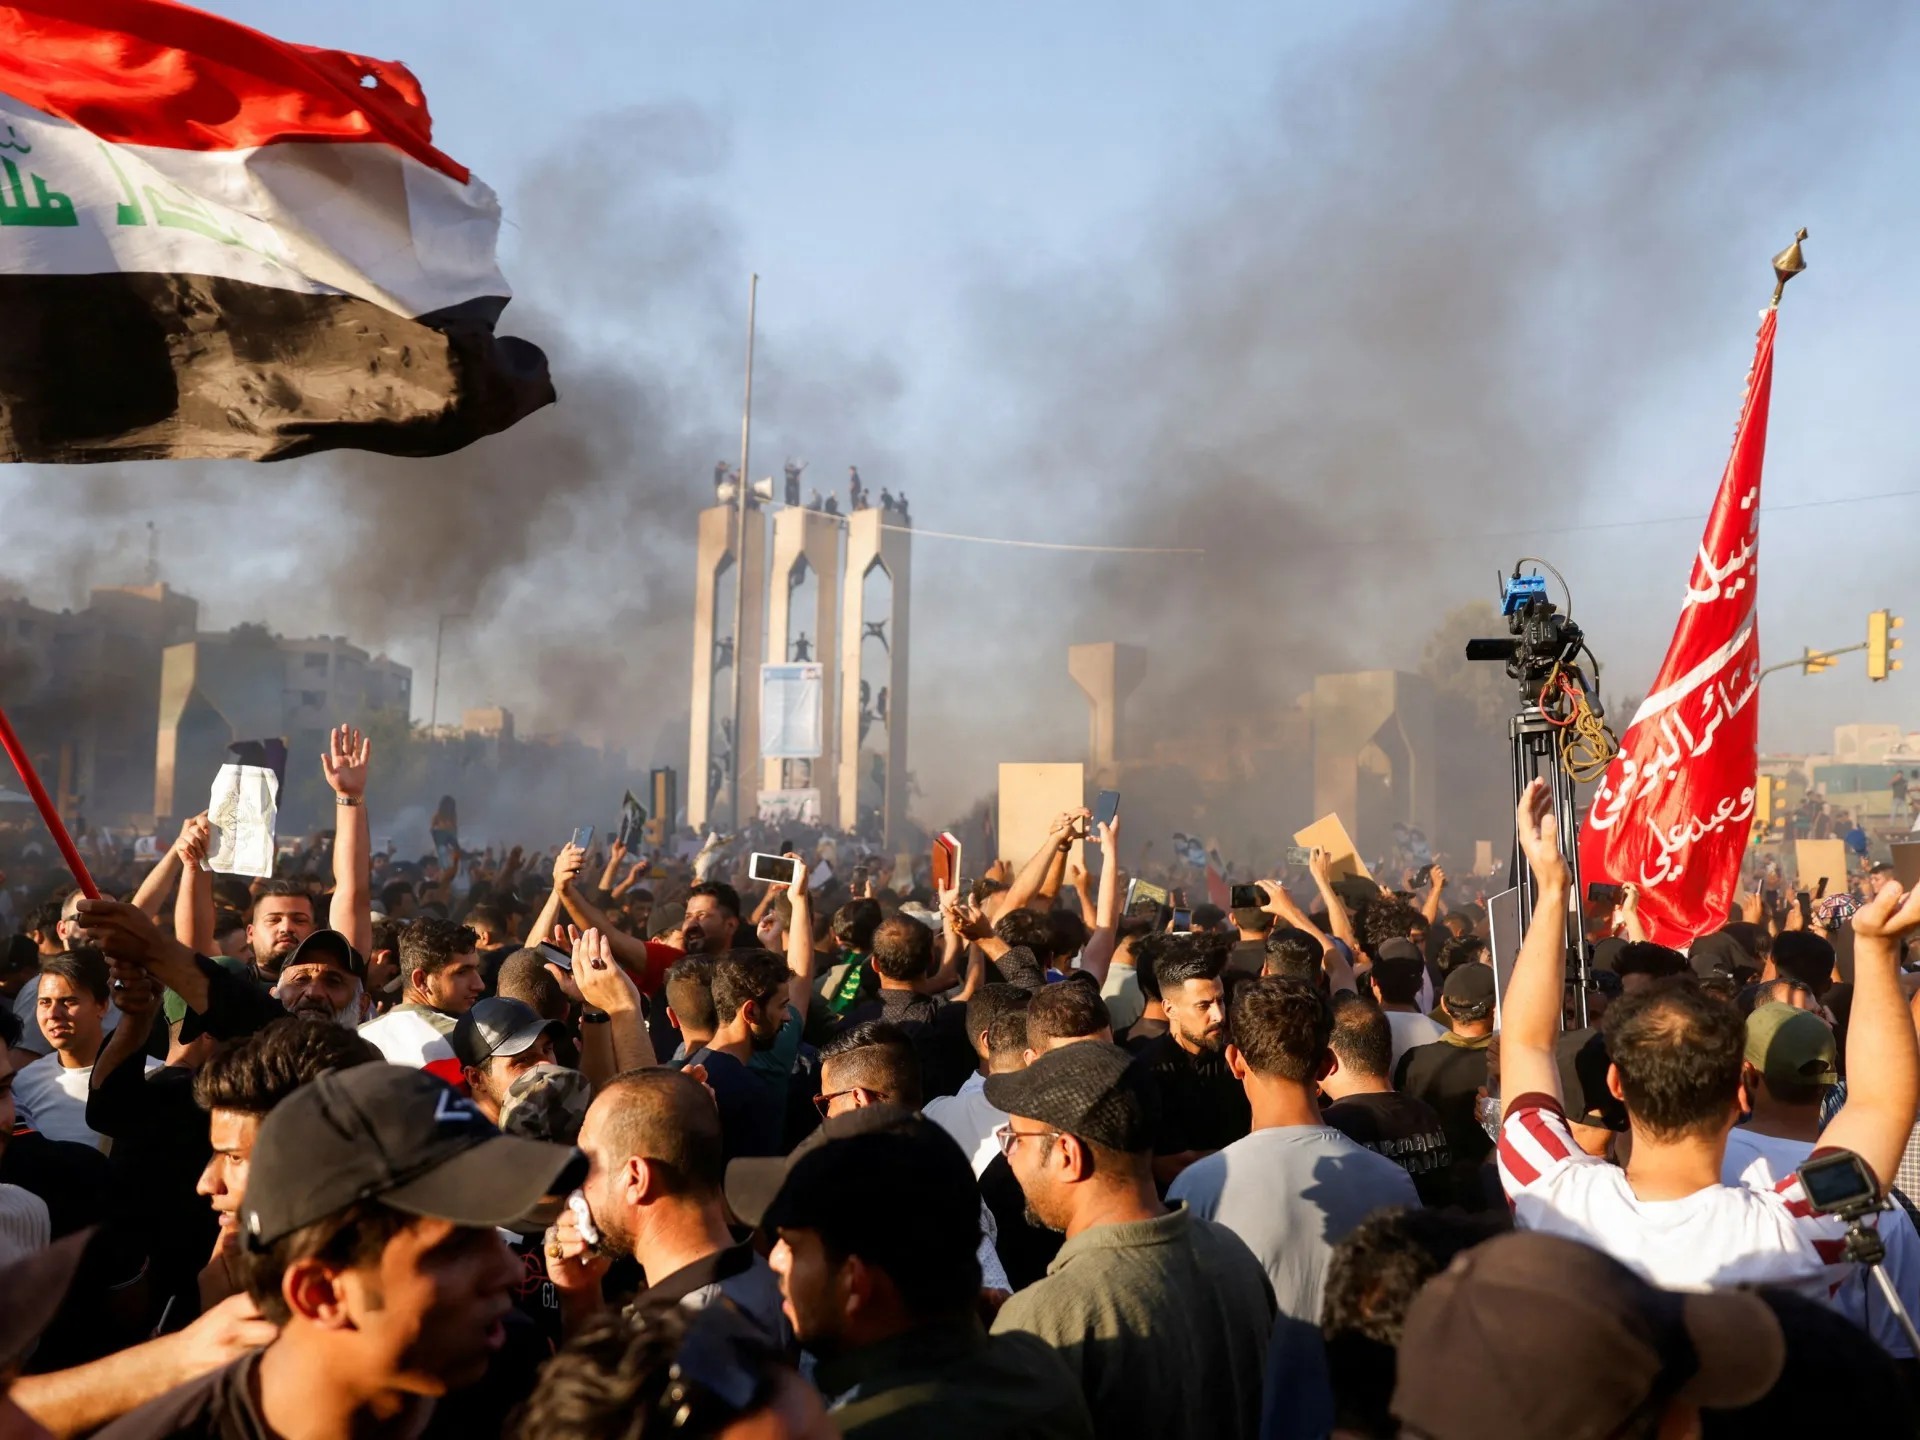 مئات المحتجين يقتحمون السفارة السويدية في بغداد ويضرمون النار فيها